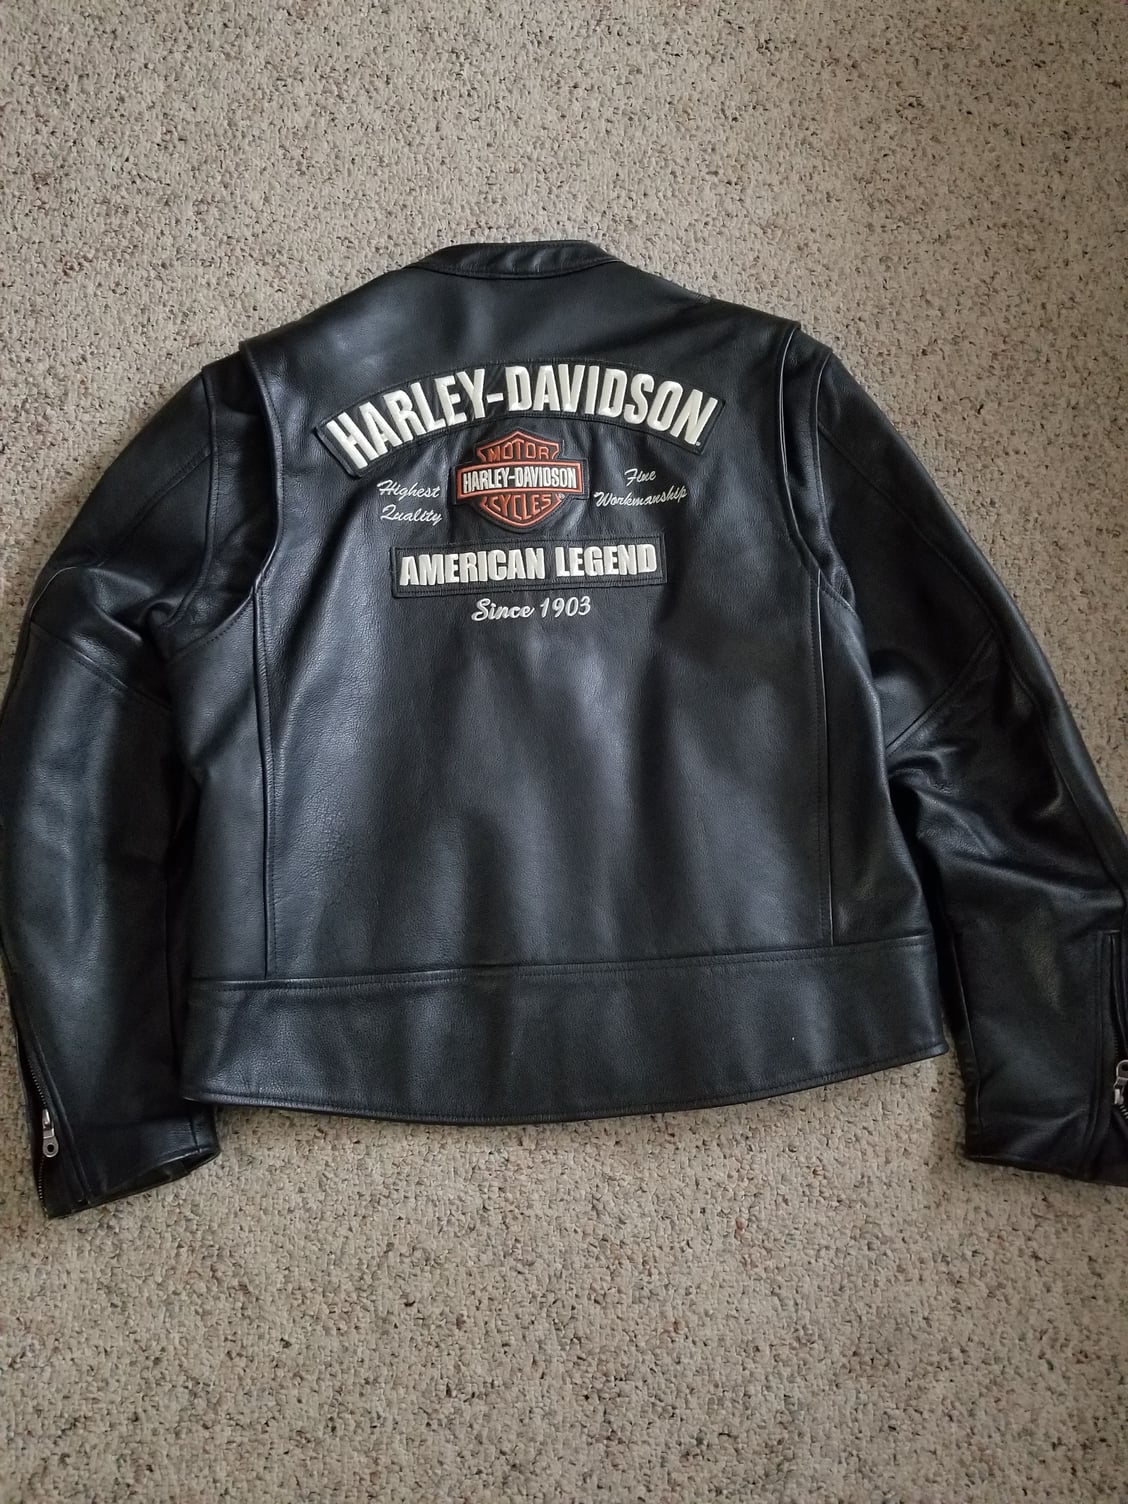 Harley-Davidson American Legend Jacket Size XL - Harley Davidson Forums